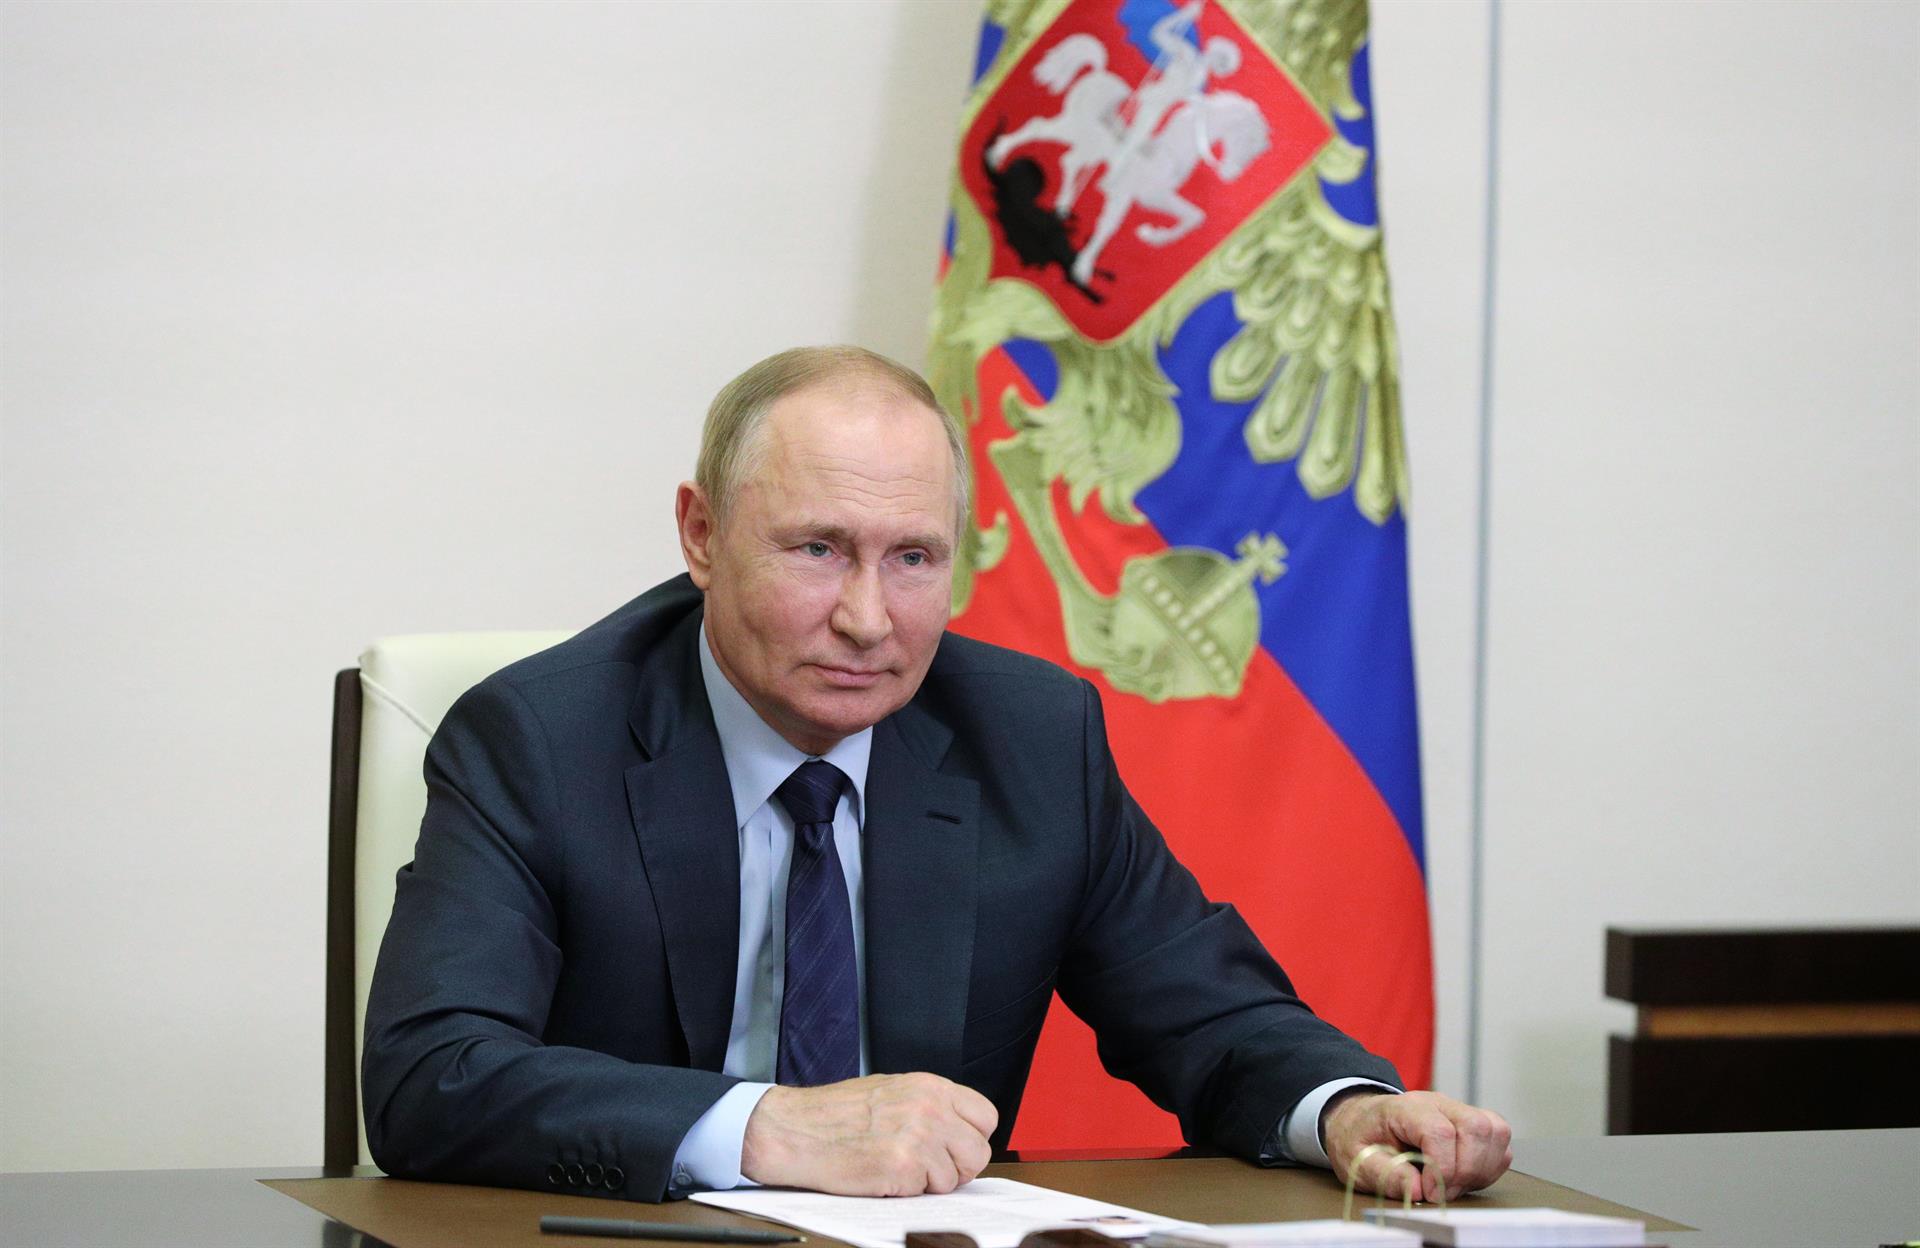 L'exèrcit rus superarà els 2 milions d'efectius al gener: Putin en signa el decret